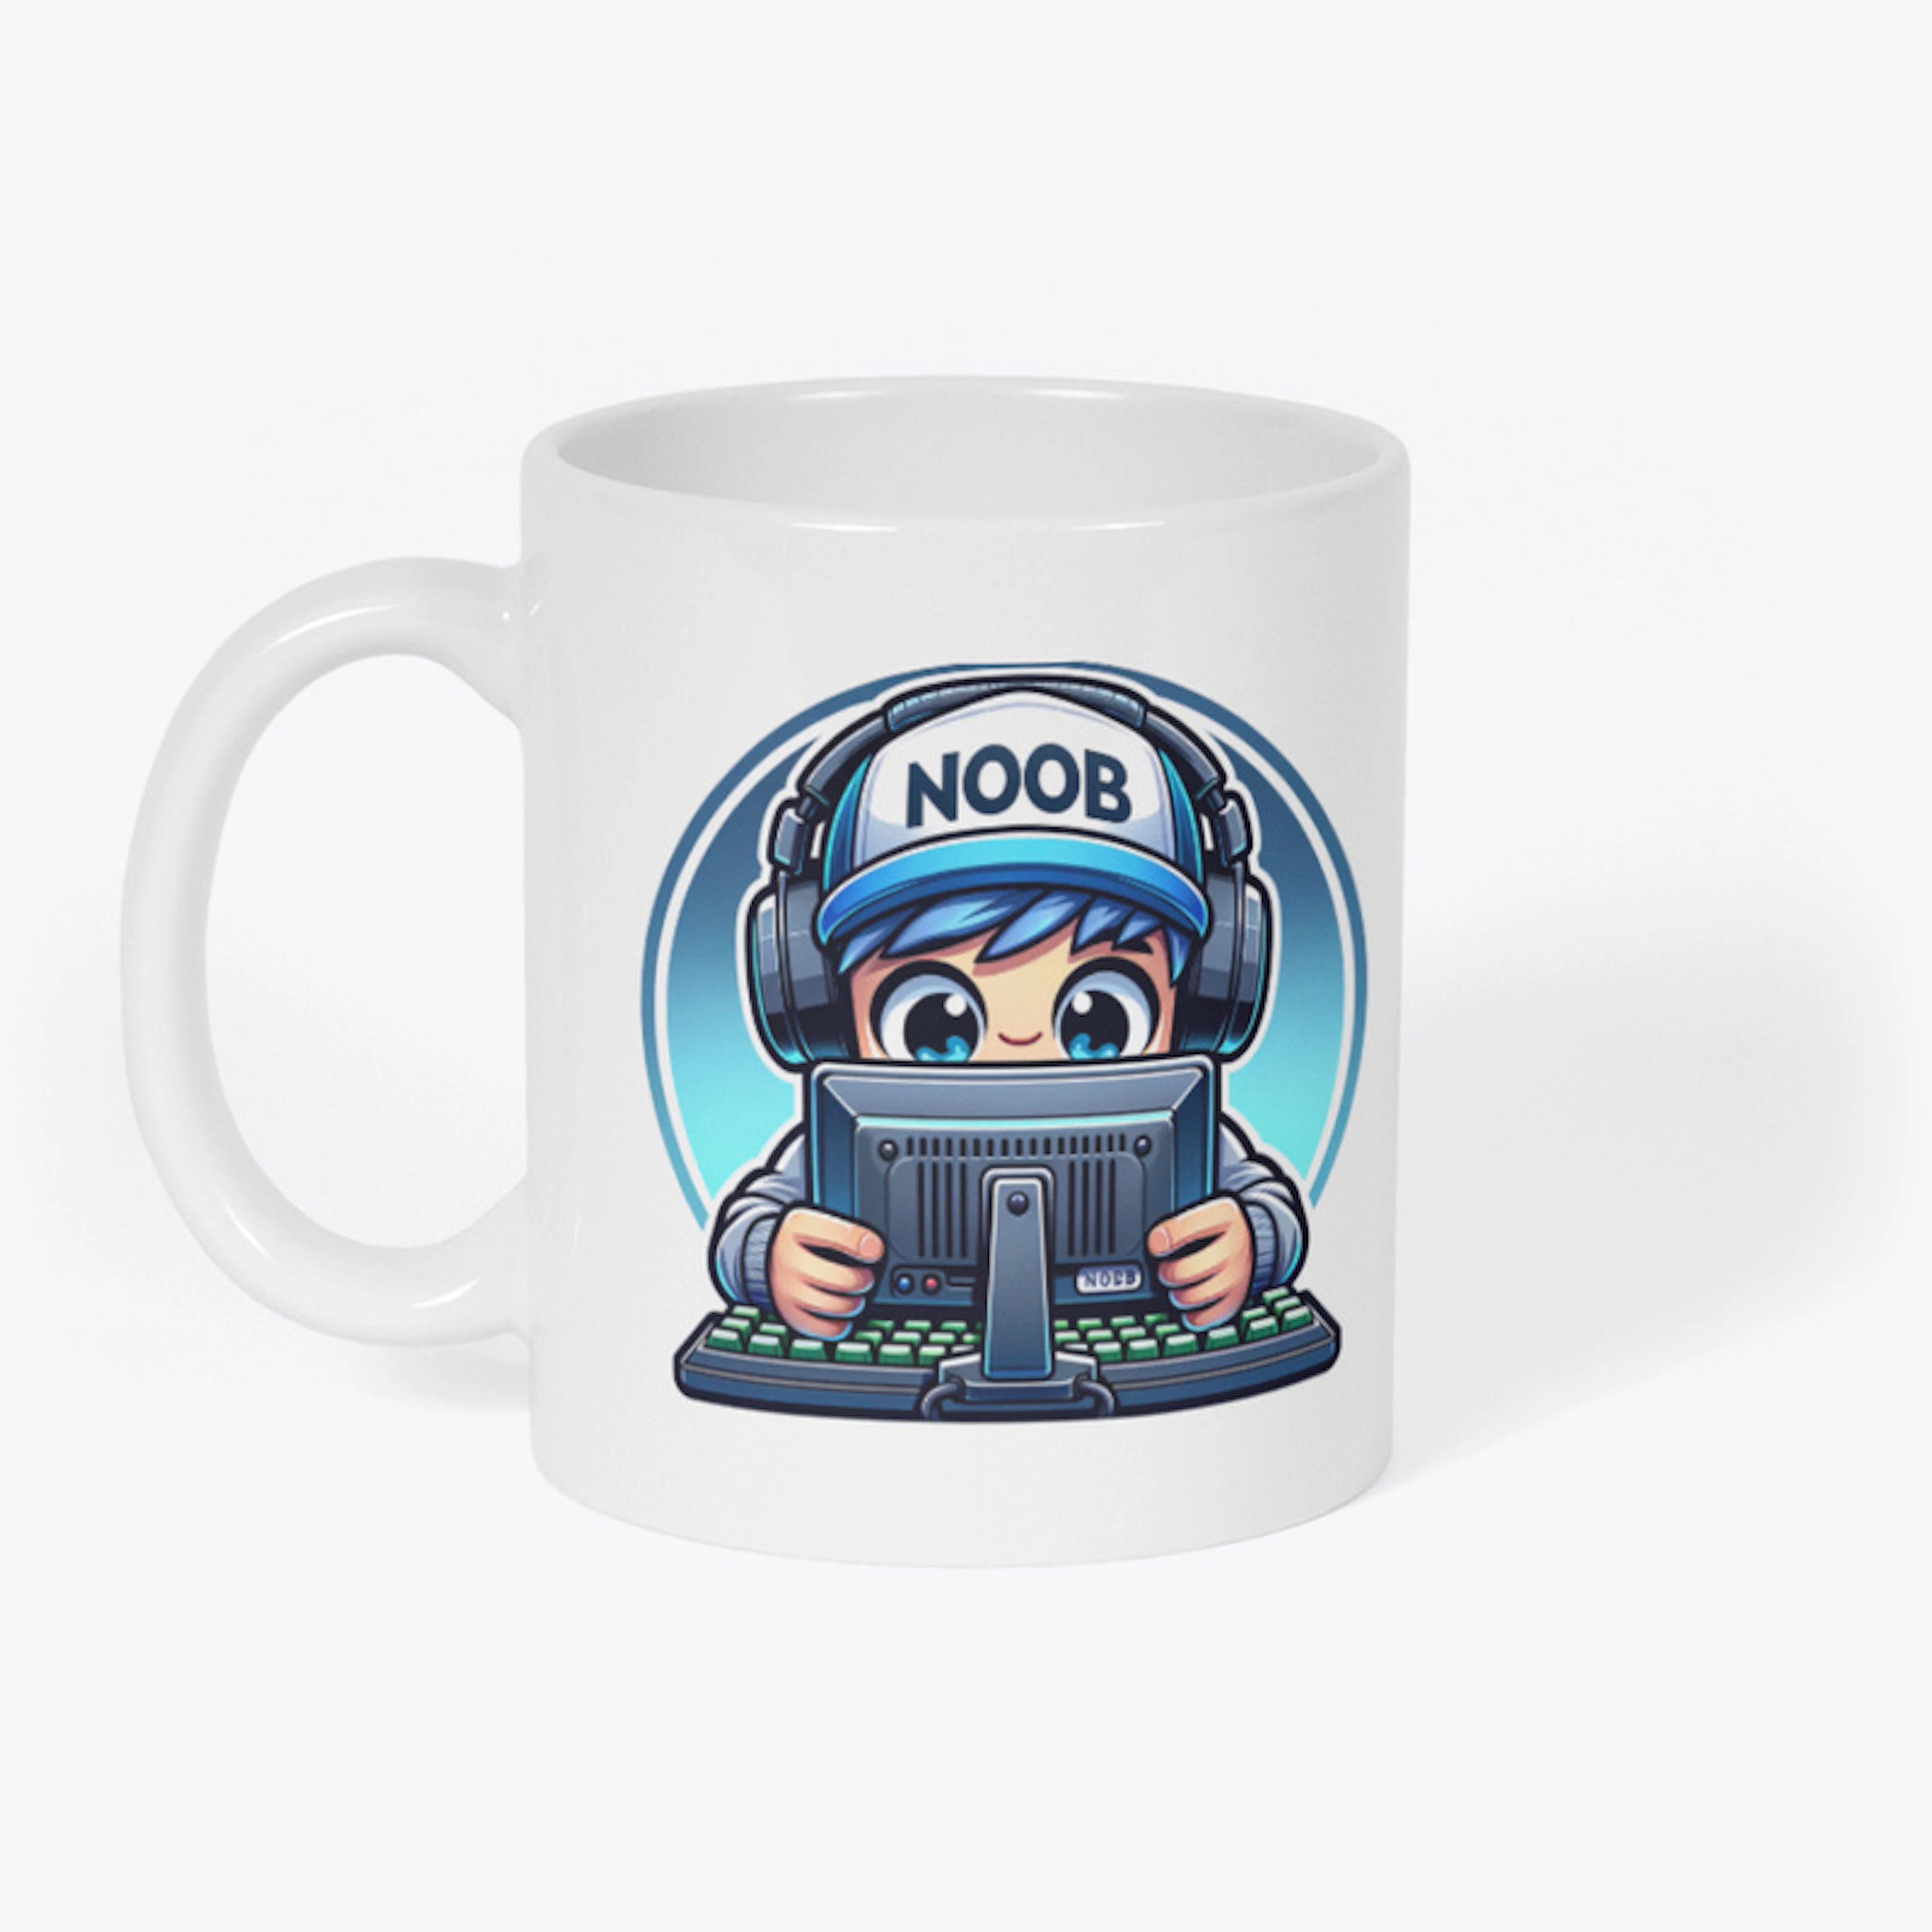 The Noob Streamer Mug